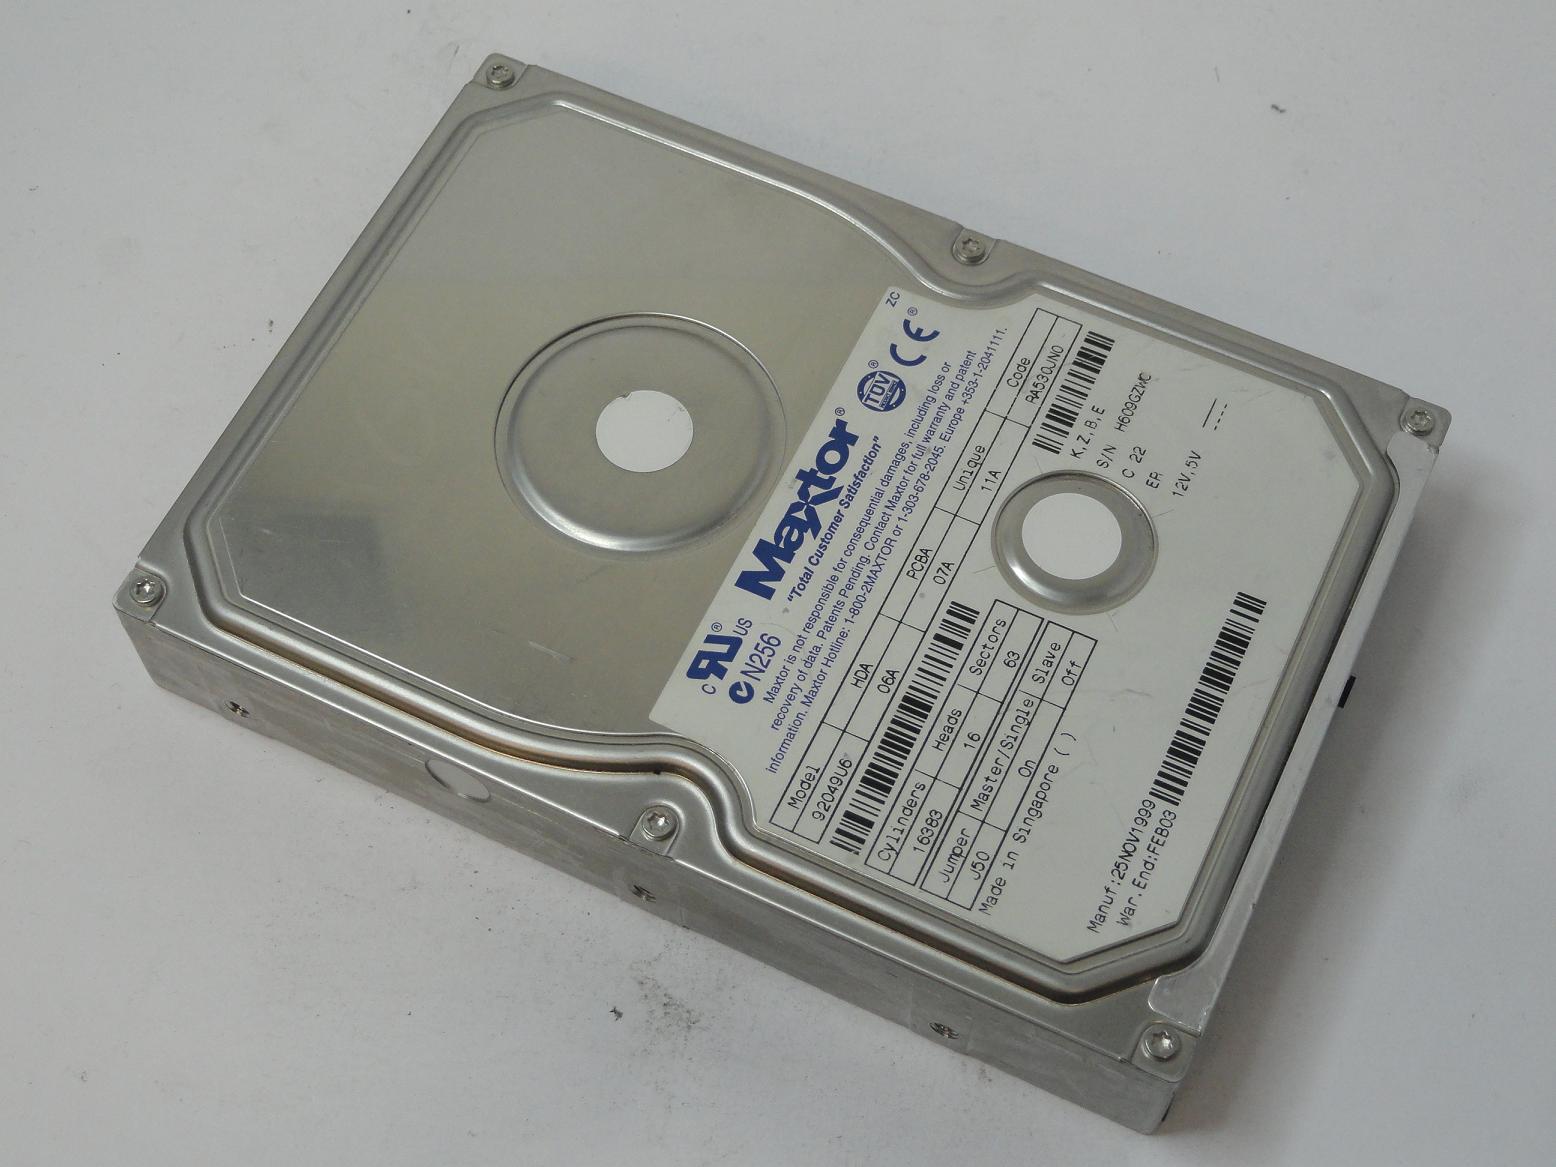 92049U6 - Maxtor 20GB 3.5" IDE HDD - Refurbished